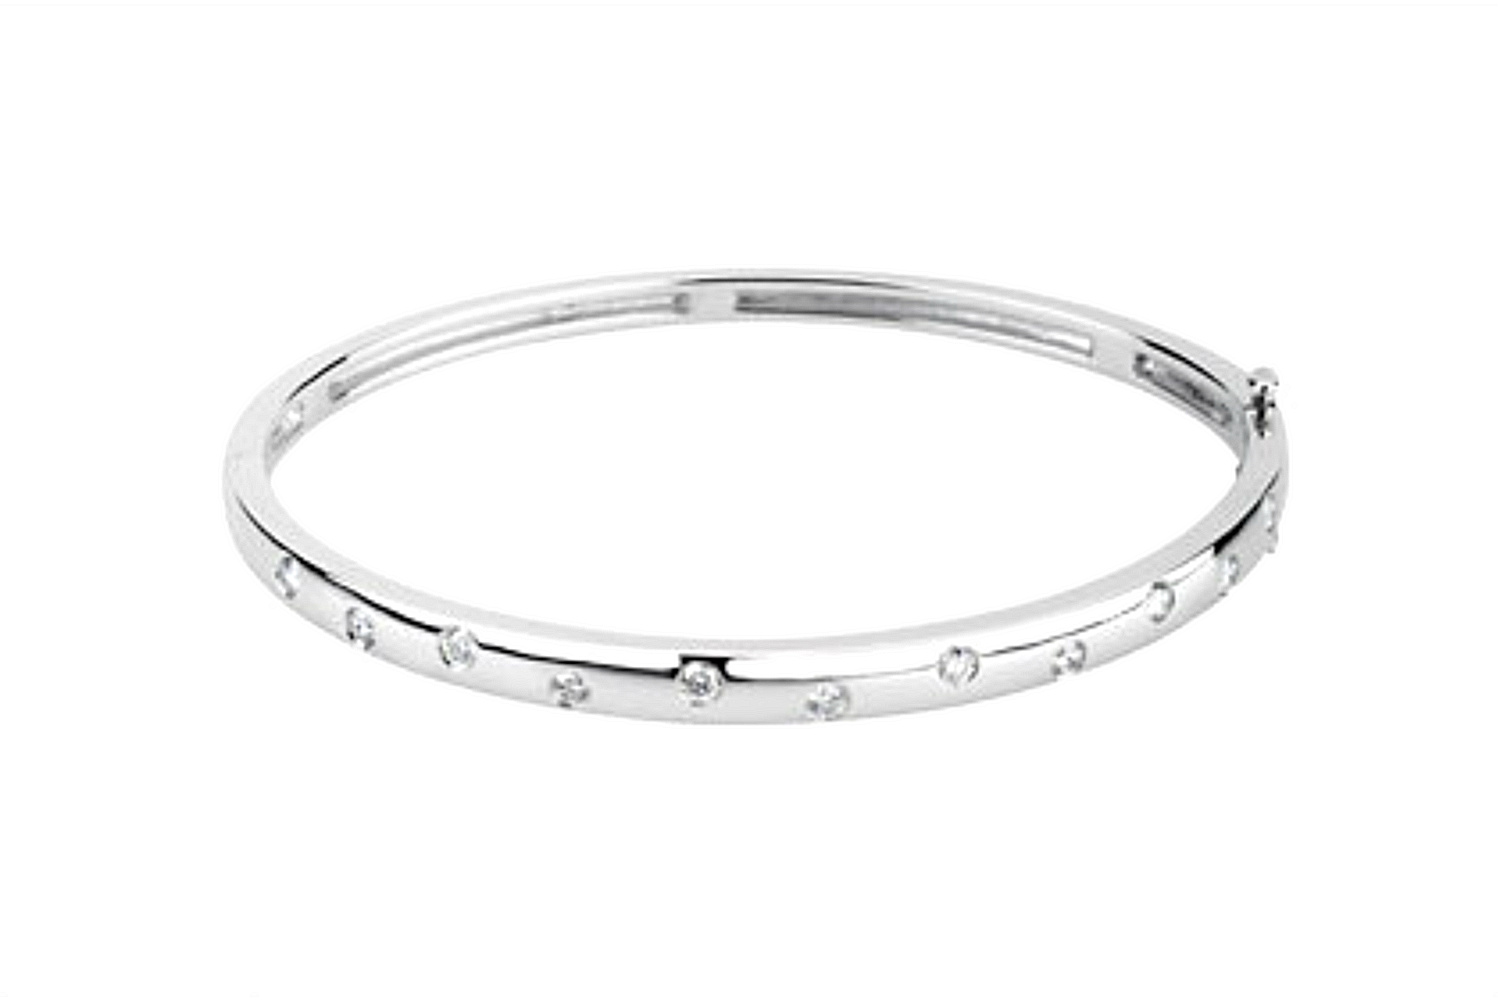 Slim Profile 1/2 CTW Diamond Bangle Bracelet in 14k White Gold, 6.5"